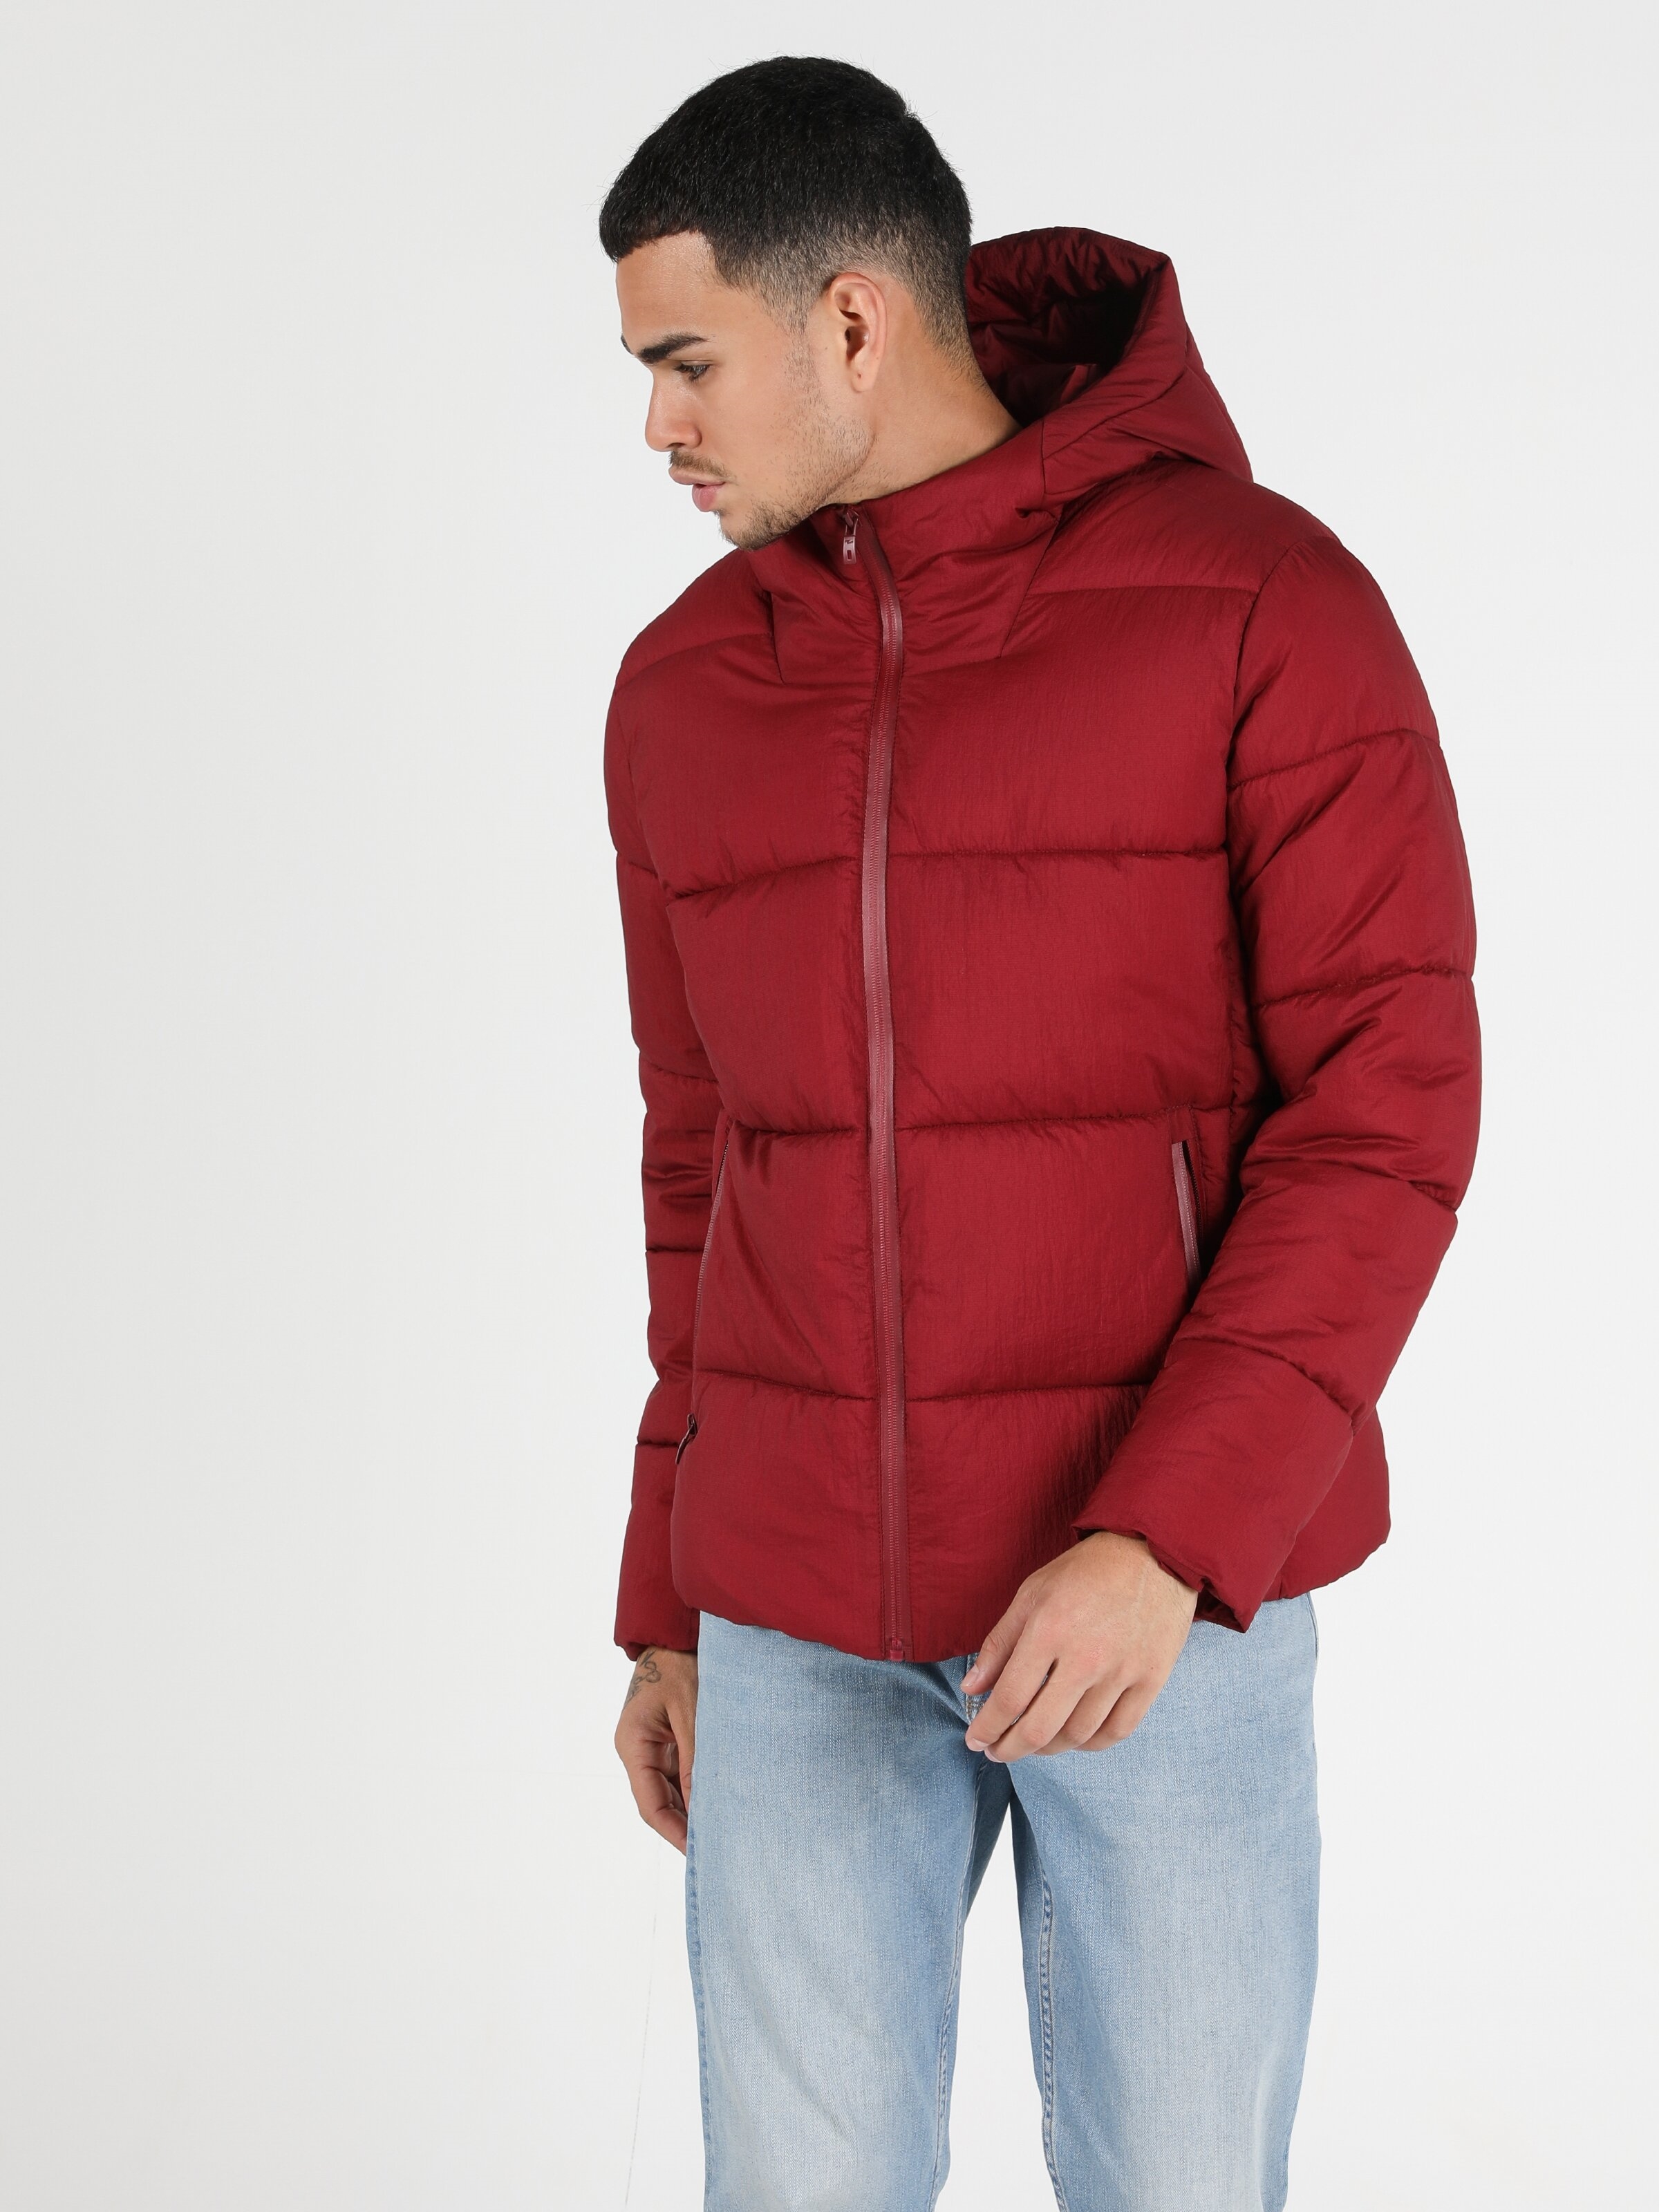 Показати інформацію про Куртка Чоловіча Червона Класичного Крою Cl1051259